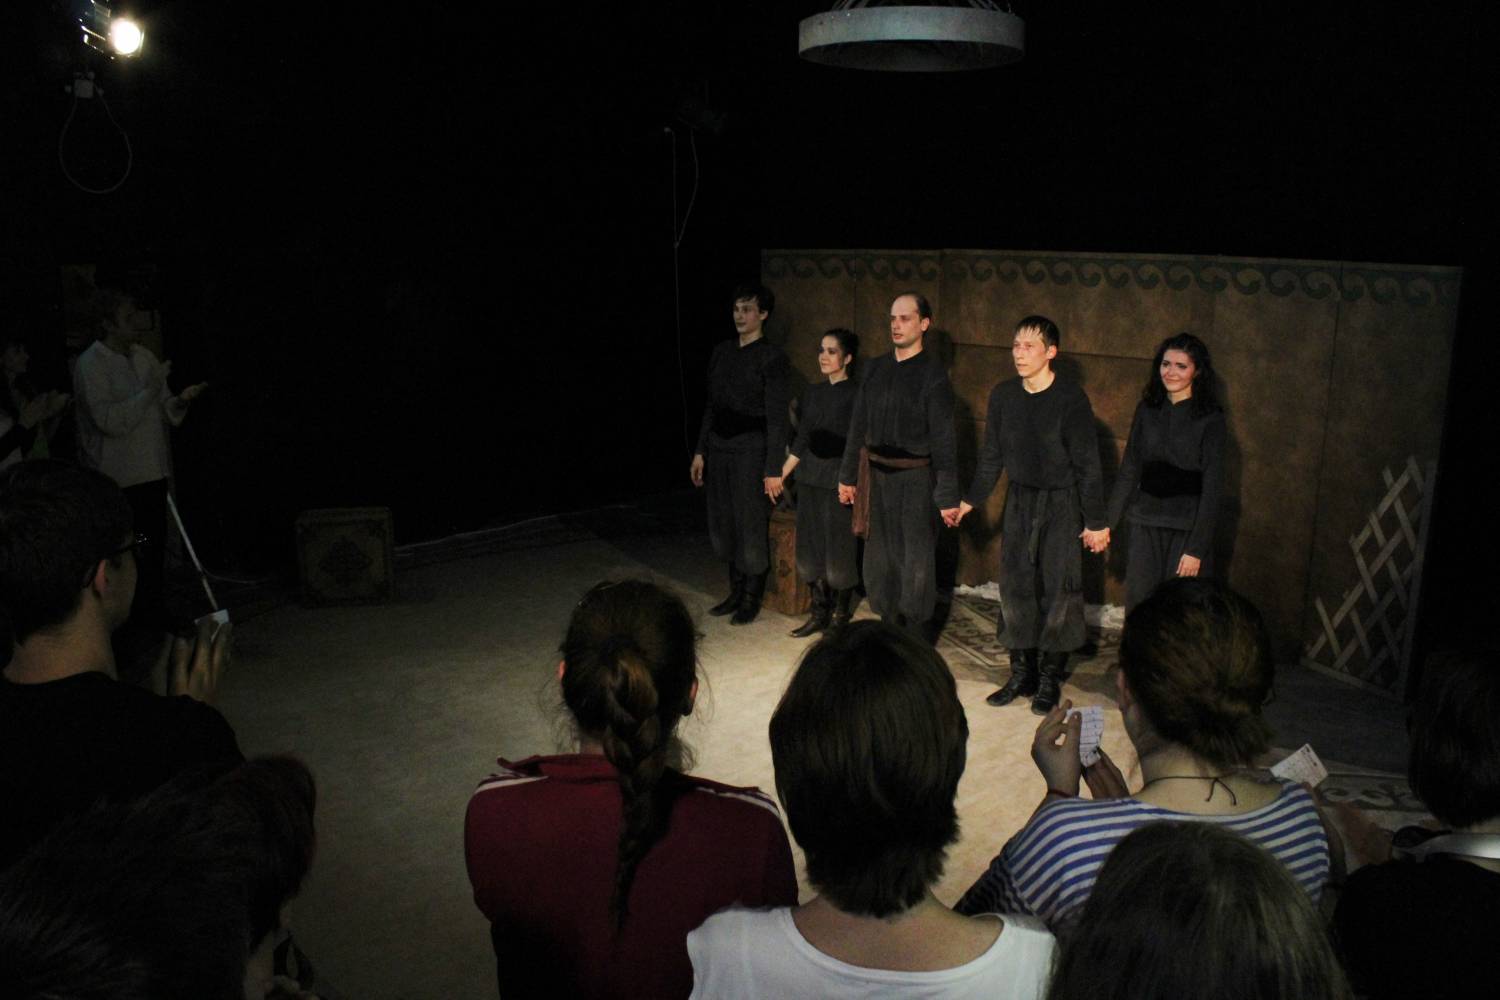 Спектакль "Плаха" стал лучшим на IV Международном фестивале спектаклей малых форм "Театромагия"!